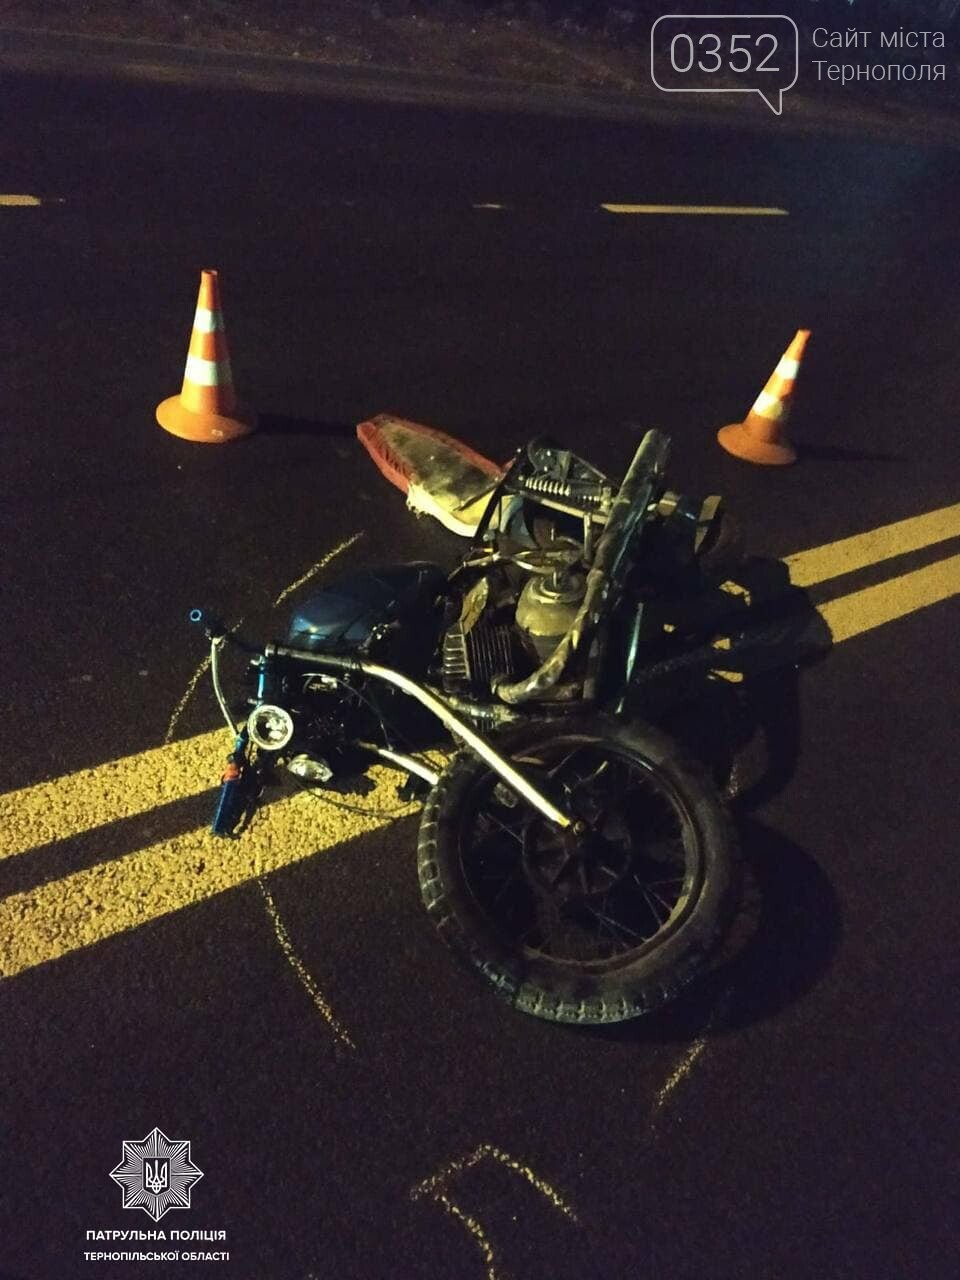 Мотоцикліст розбився, а за кілька хвилин на мотоцикл наїхав п’яний водій: у Тернополі сталася подвійна ДТП